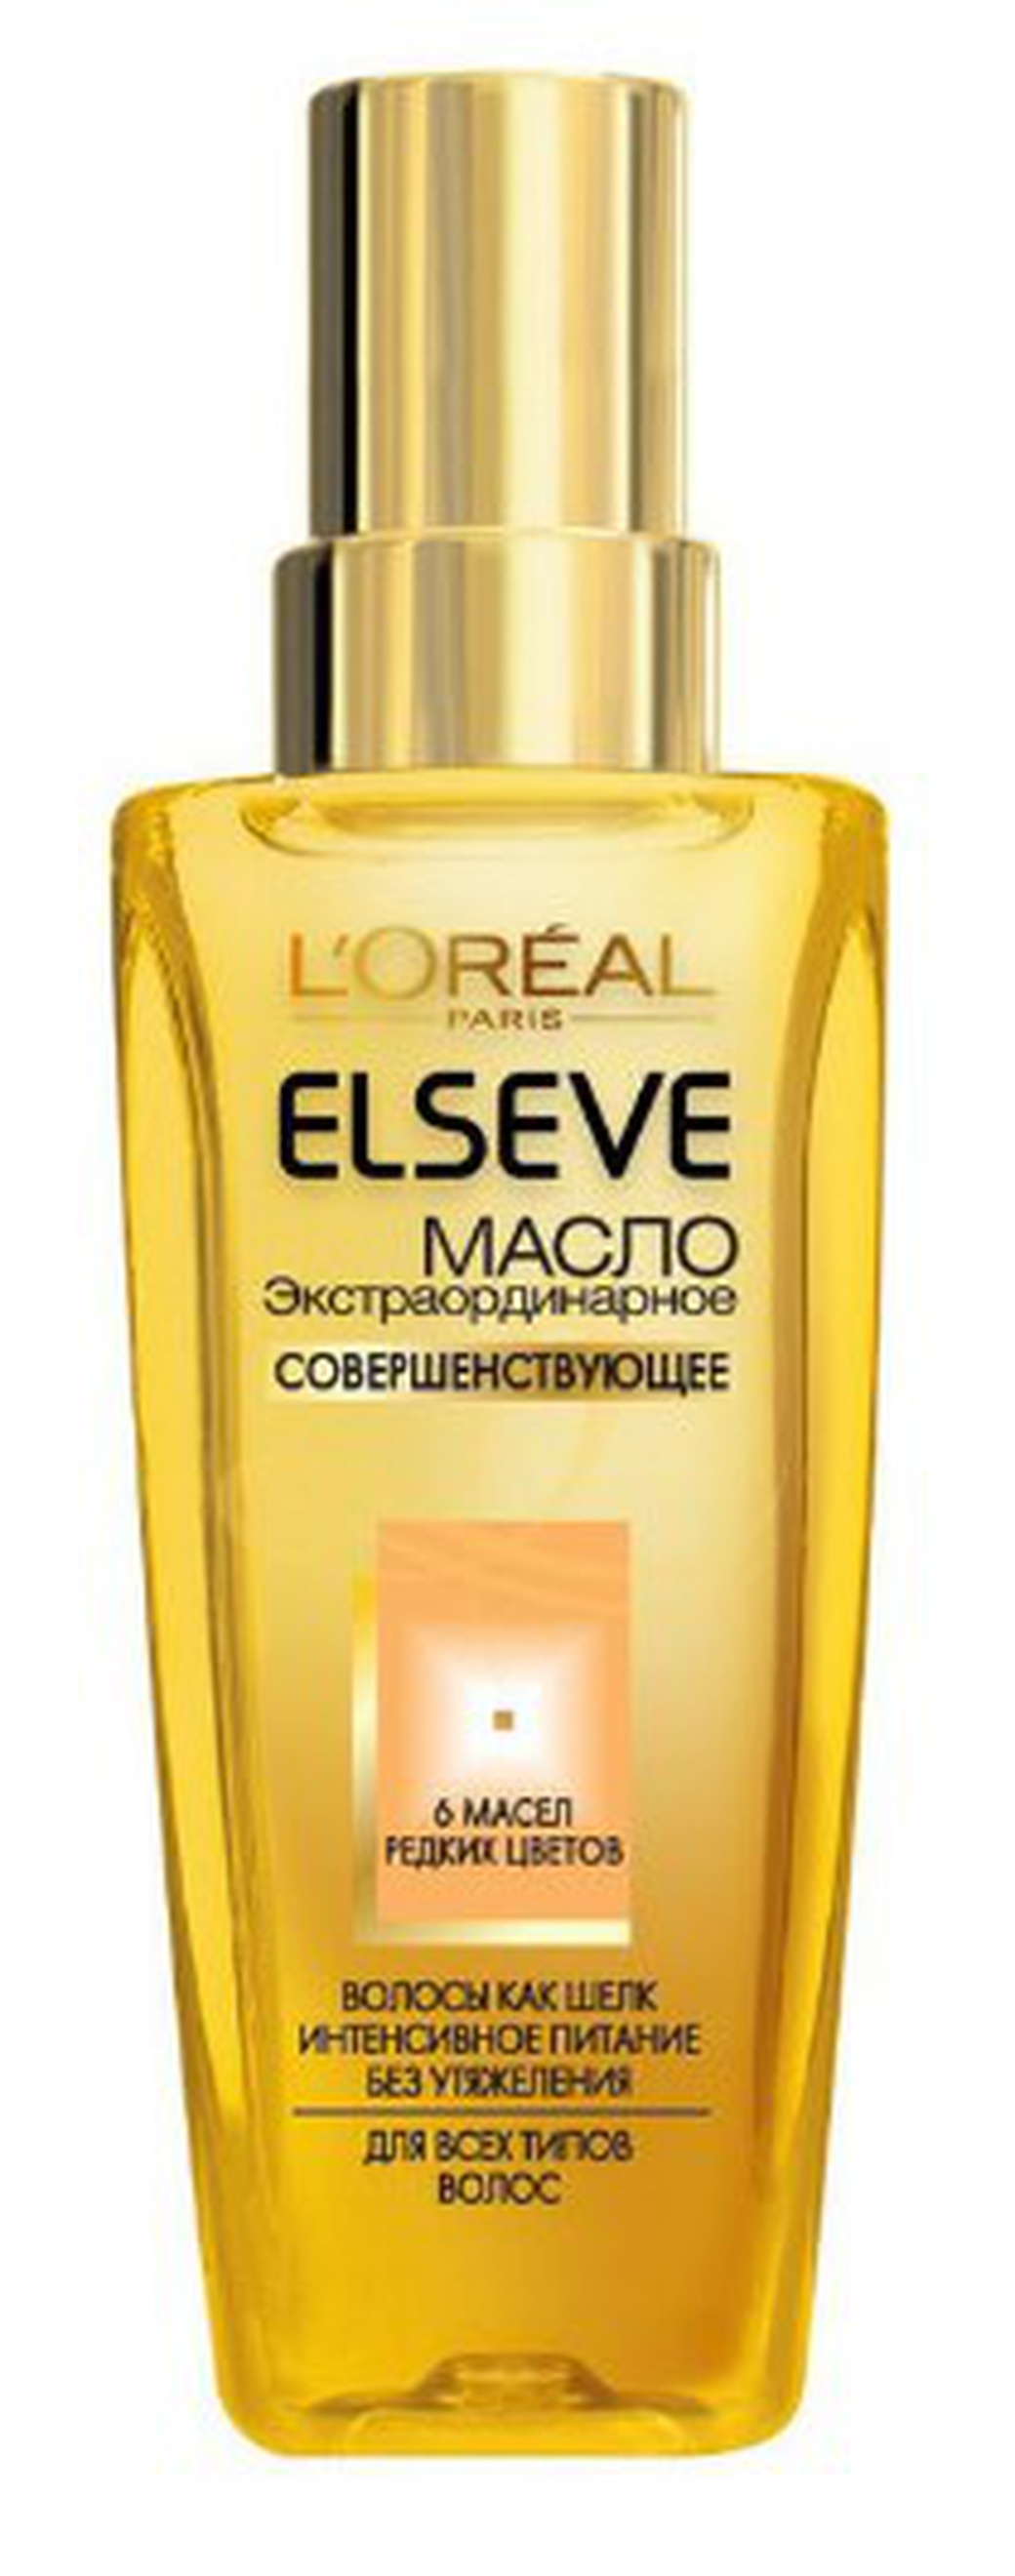 L'Oreal Elseve Масло экстраординарное для волос универсальное 50мл фото